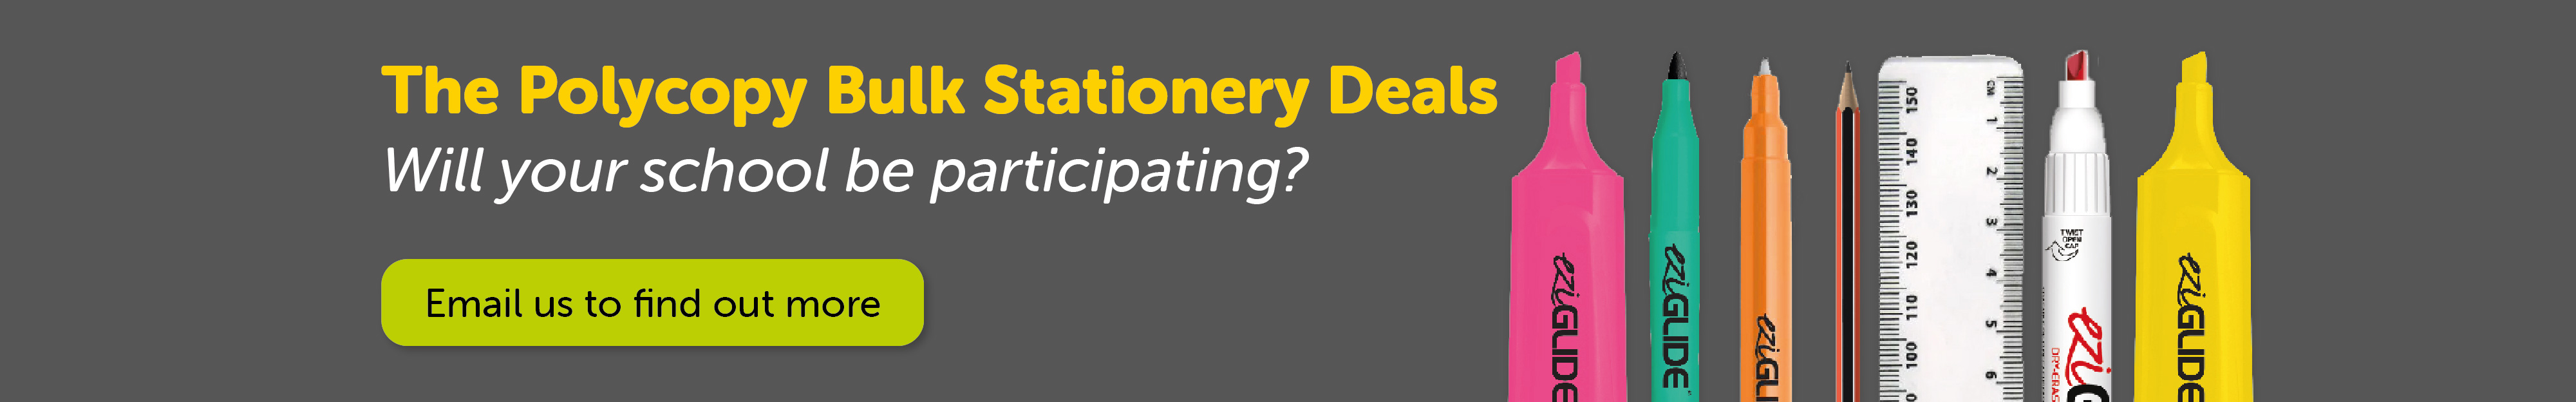 Polycopy Bulk Stationery Deal